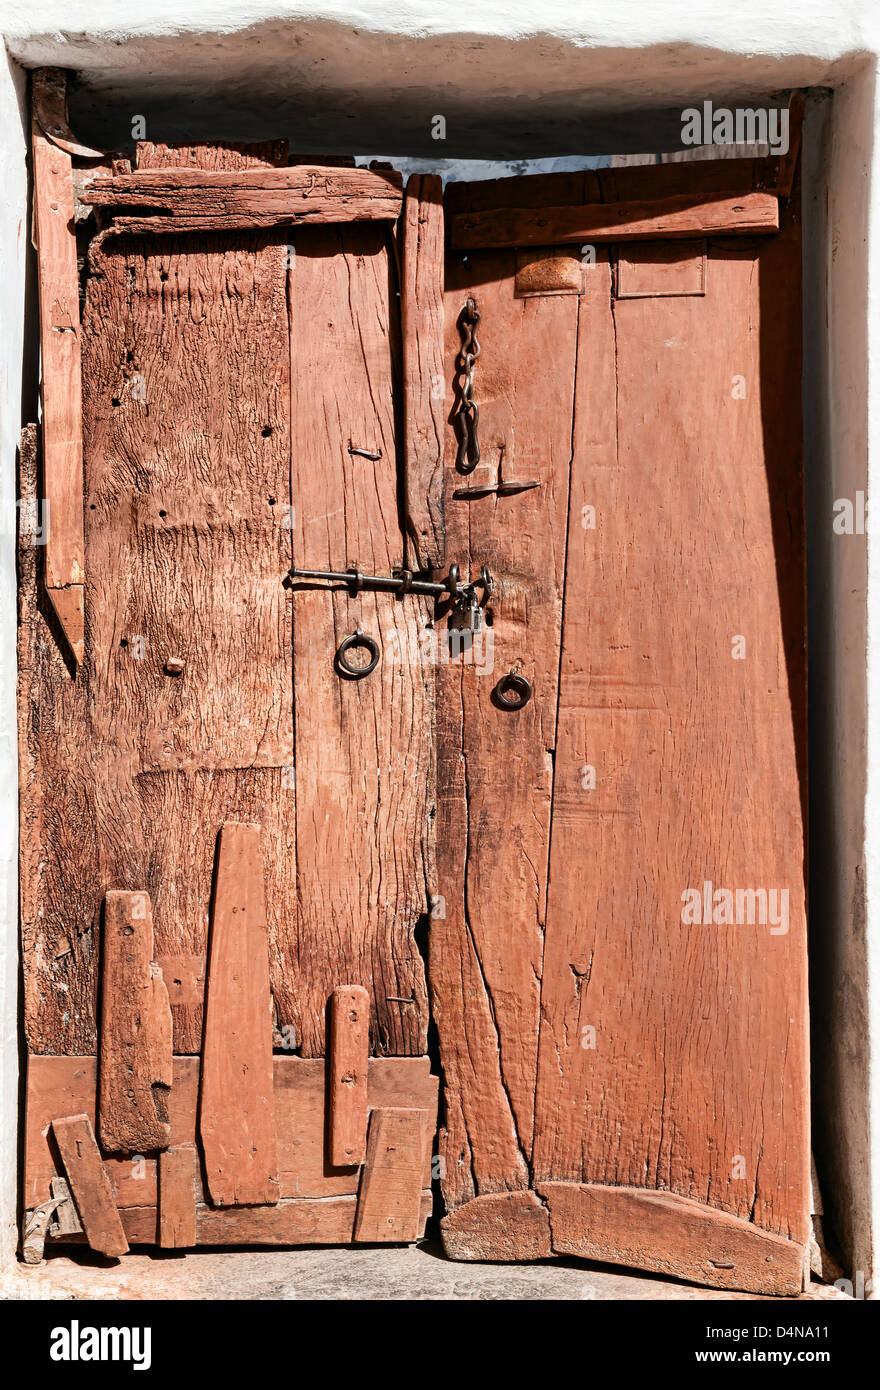 Vieille porte en bois délabrées. Le Rajasthan, Inde, Asie Banque D'Images